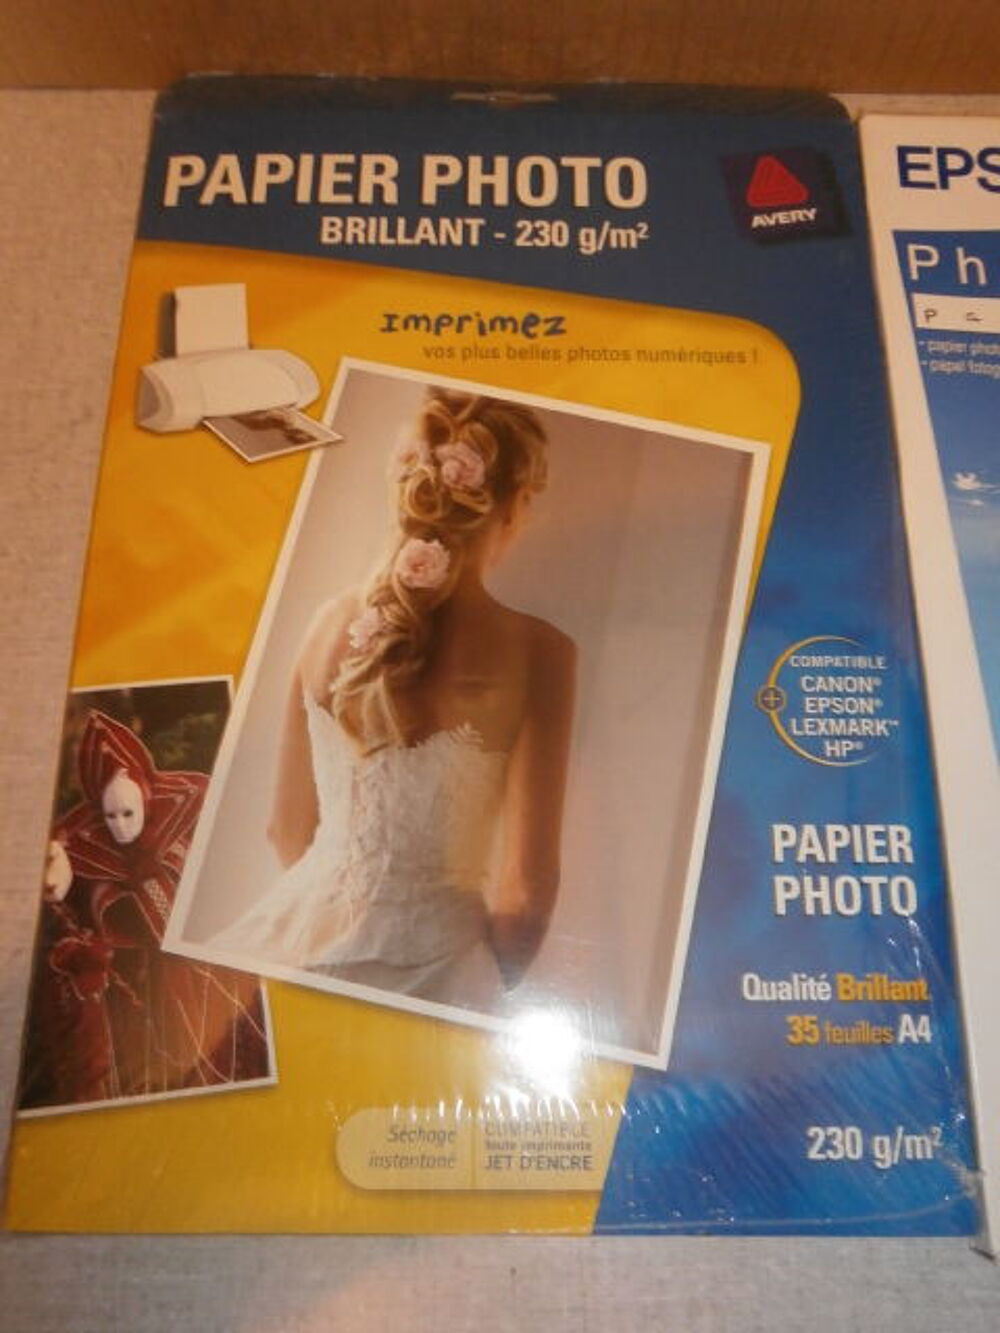 Papiers photo brillants 40pages + 1 HP Party Kit Matriel informatique